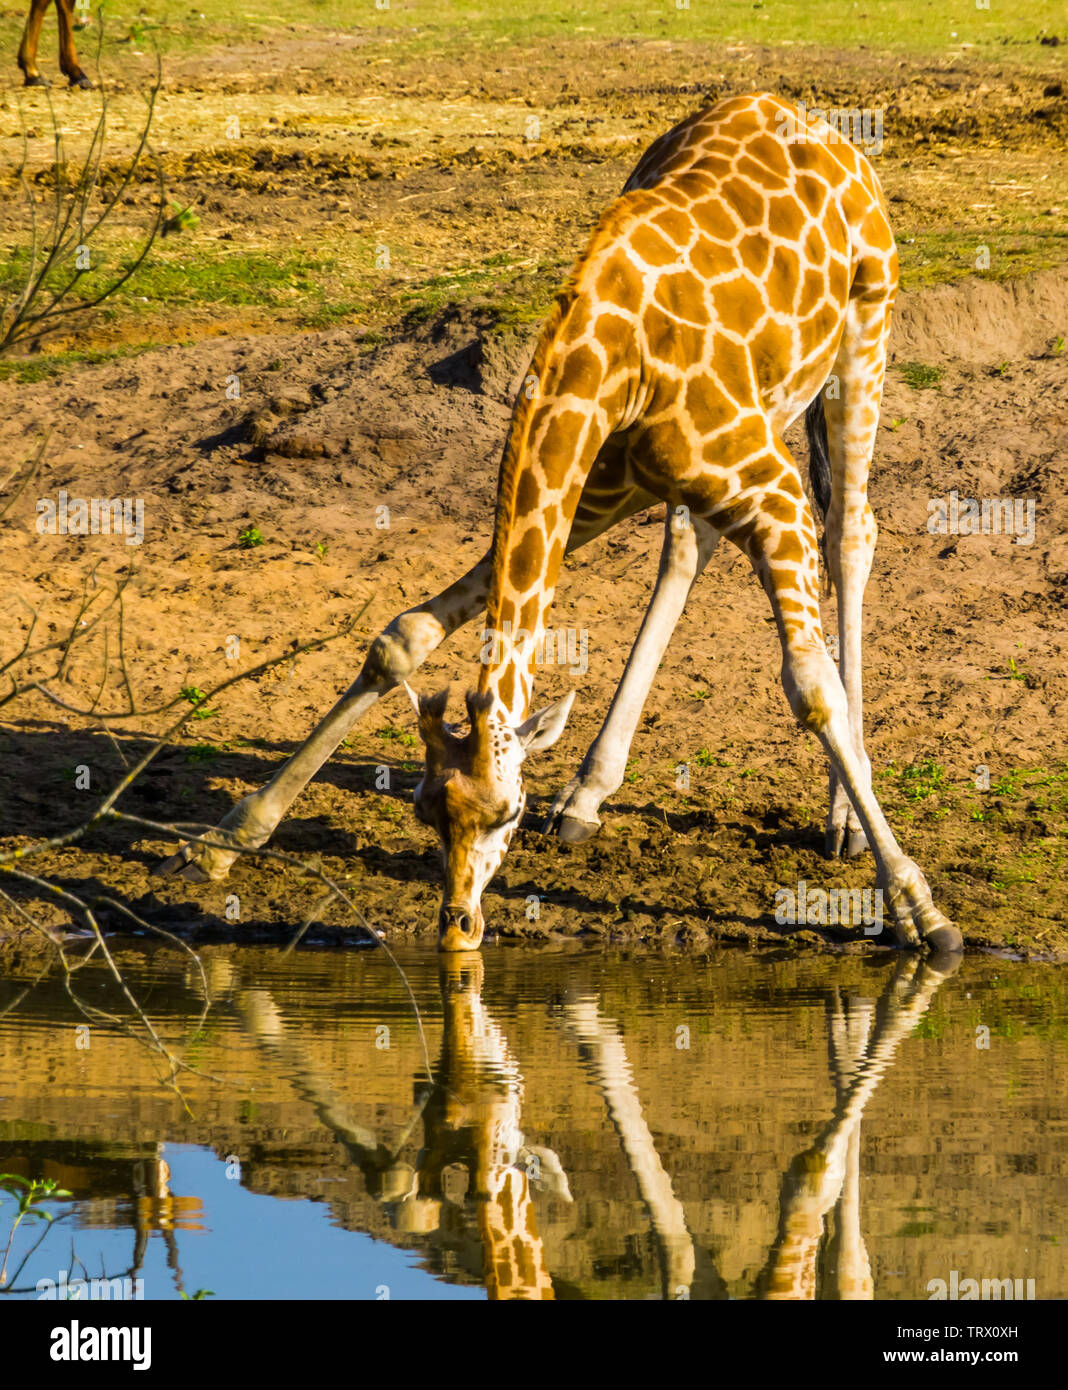 Nubian giraffe in piedi in un divertente split pongono mentre acqua potabile dal lago, specie gravemente minacciate specie animale dall'Africa Foto Stock